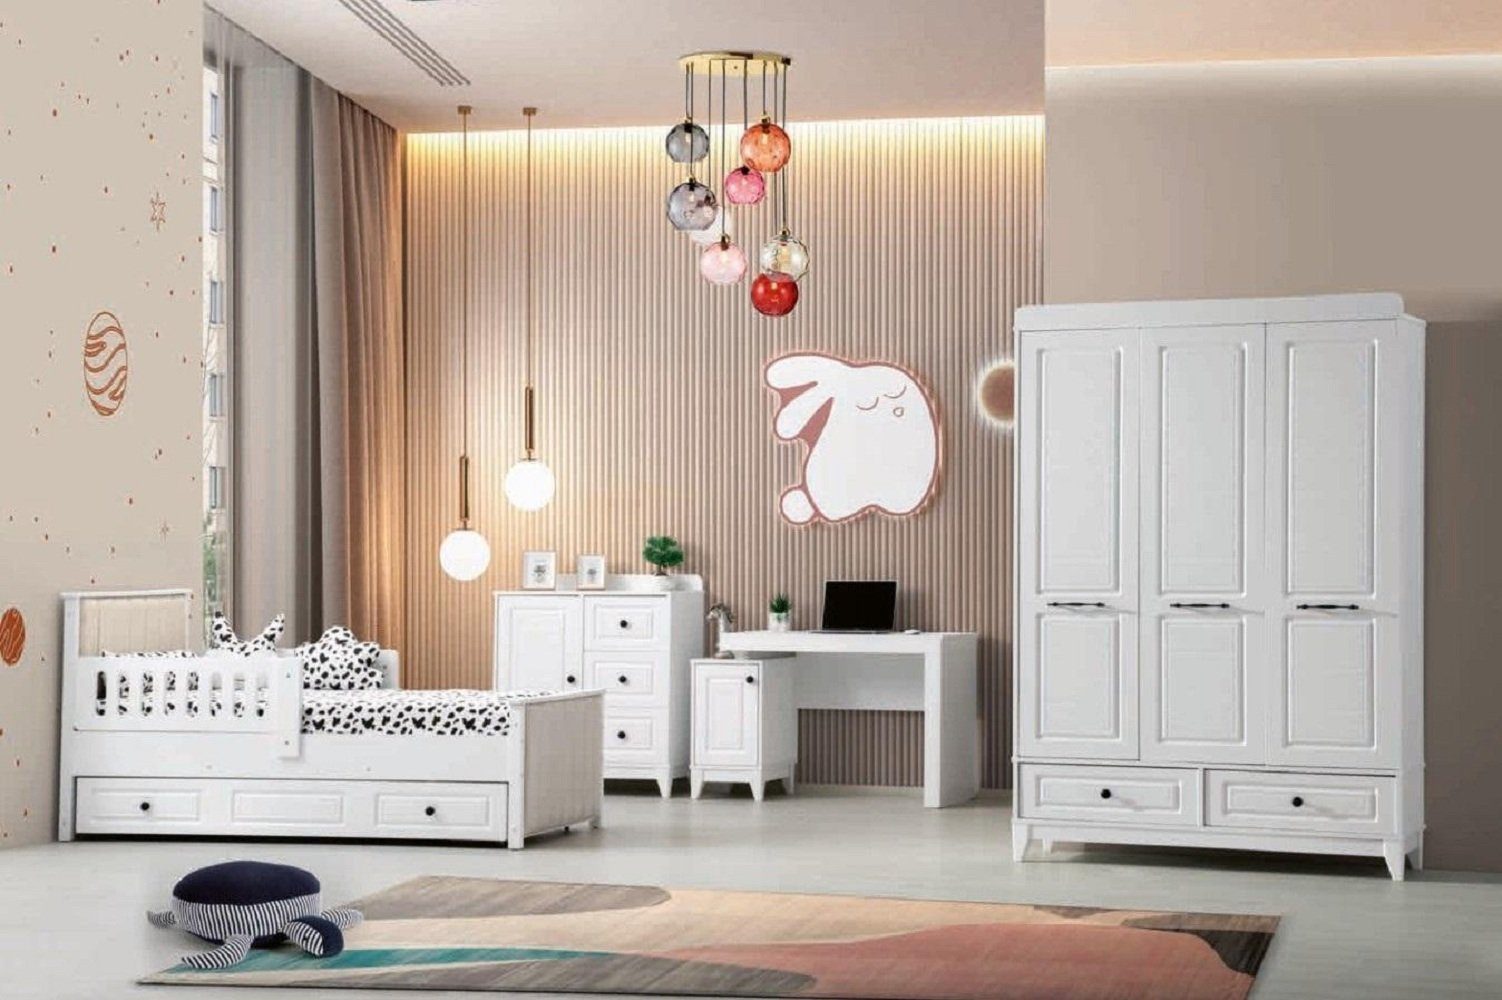 JVmoebel Schlafzimmer-Set Modern Komplett Jugendzimmer Luxus Kinderzimmer Set 4tlg Weiß Farbe, (4-St., 1x Bett + 1x Kleiderschrank + 1x Kommode + 1x Schreibtisch), Made in Europa